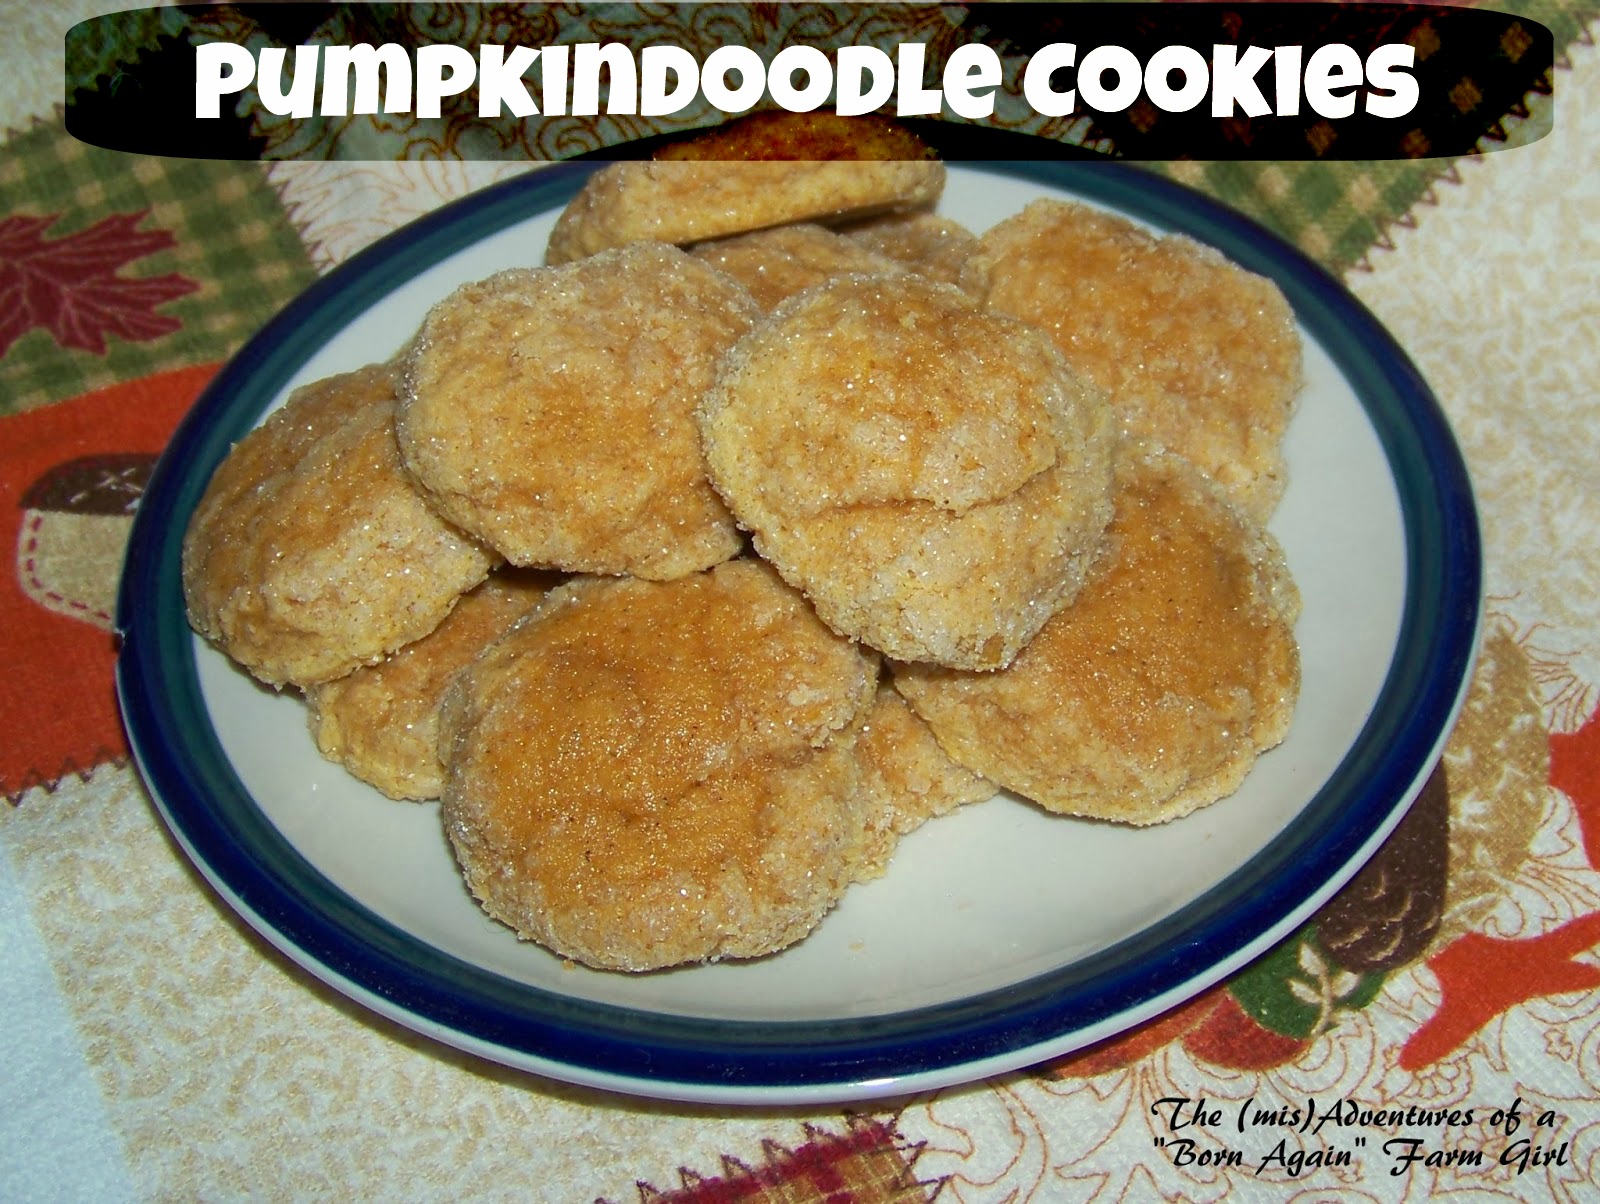 Pumpkindoodle Cookies